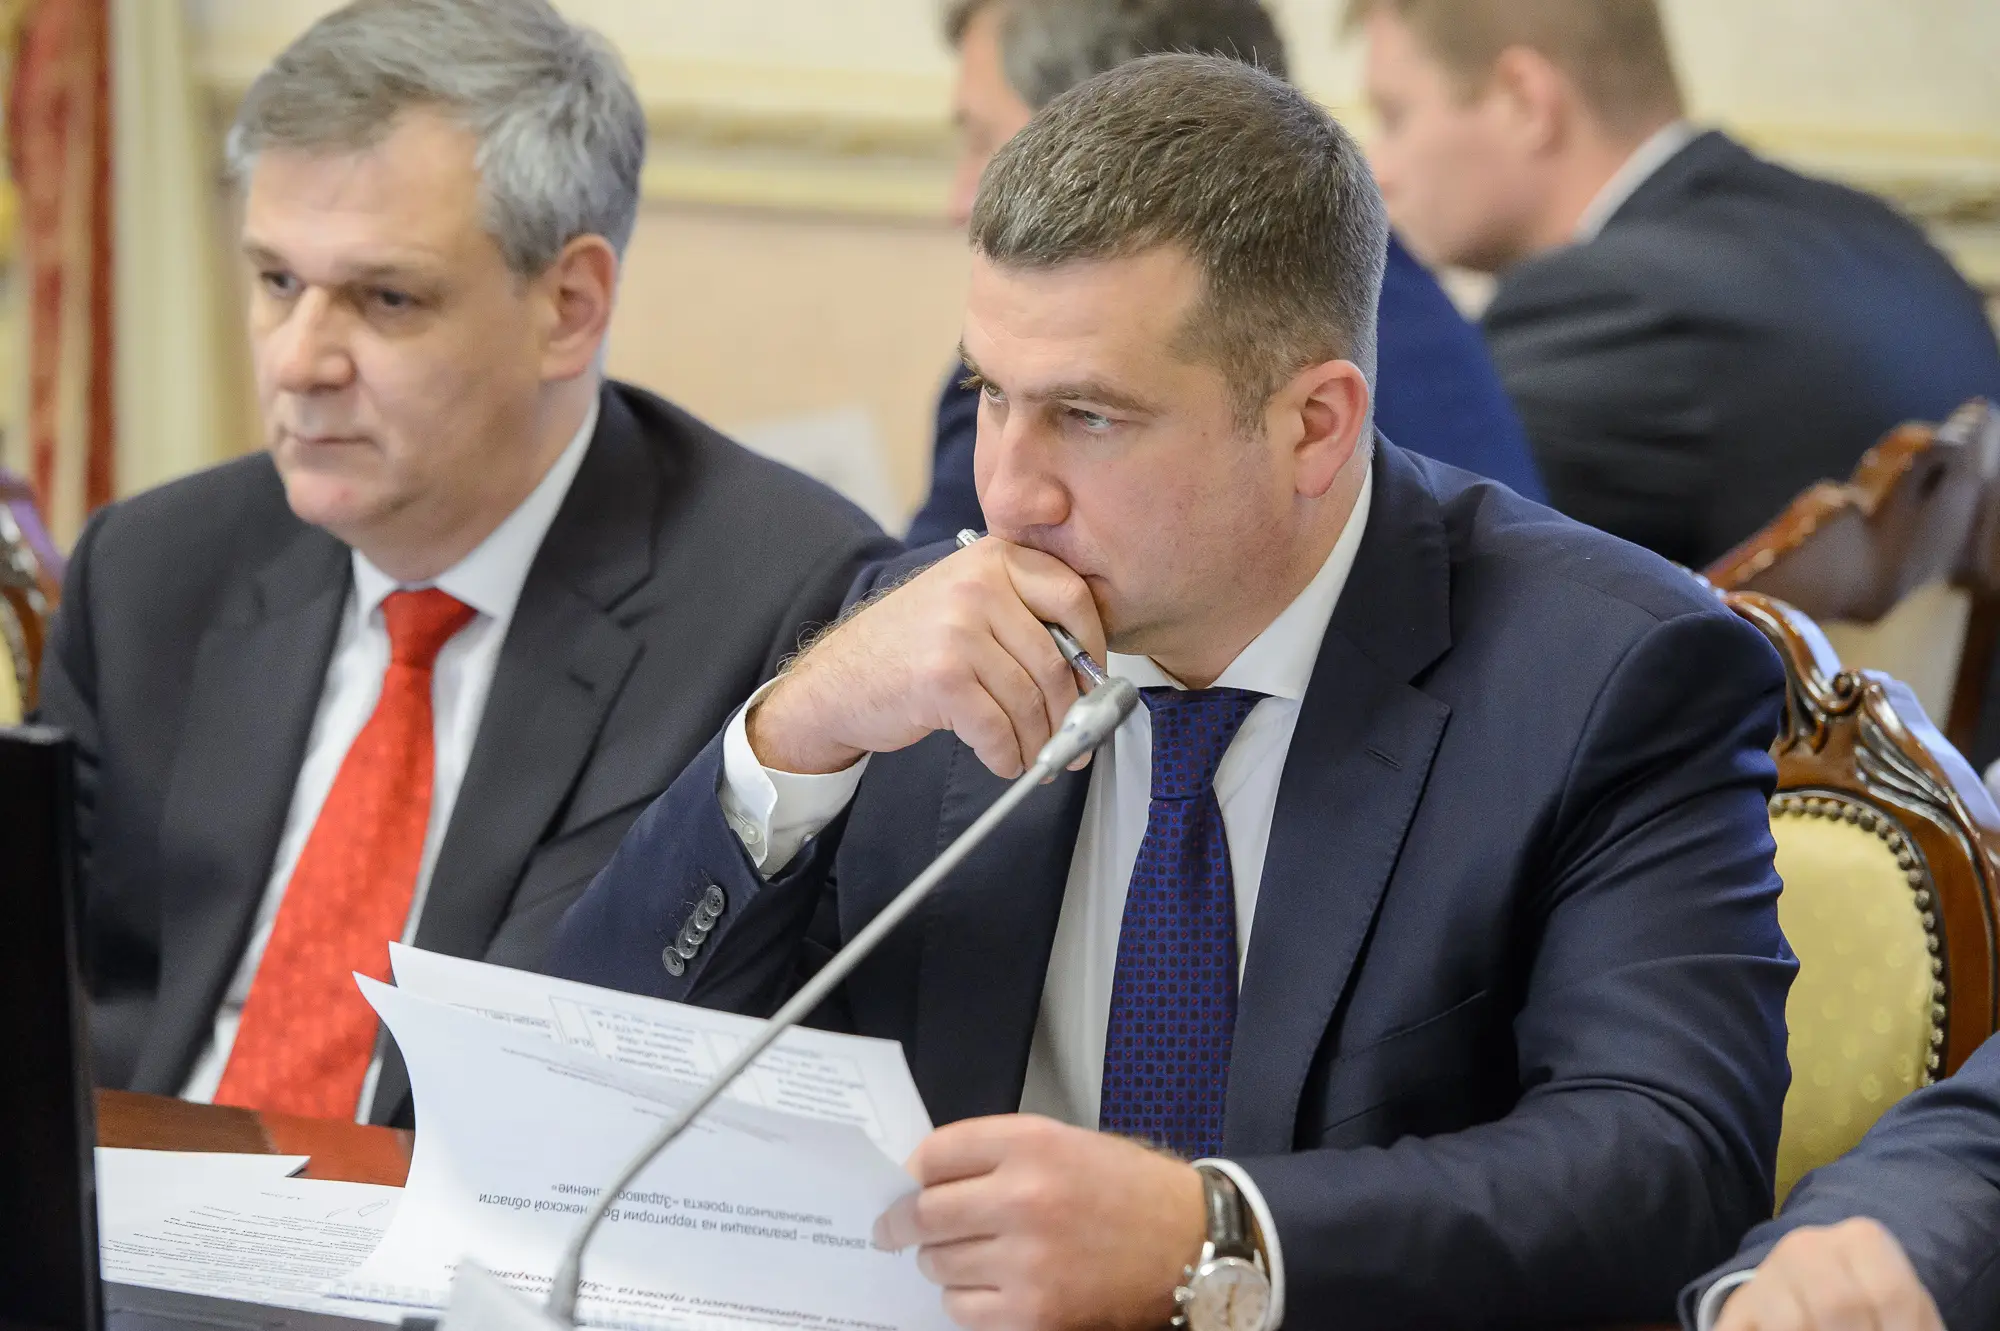 Руководитель воронежского департамента здравоохранения удвоил заработок до 7 млн рублей